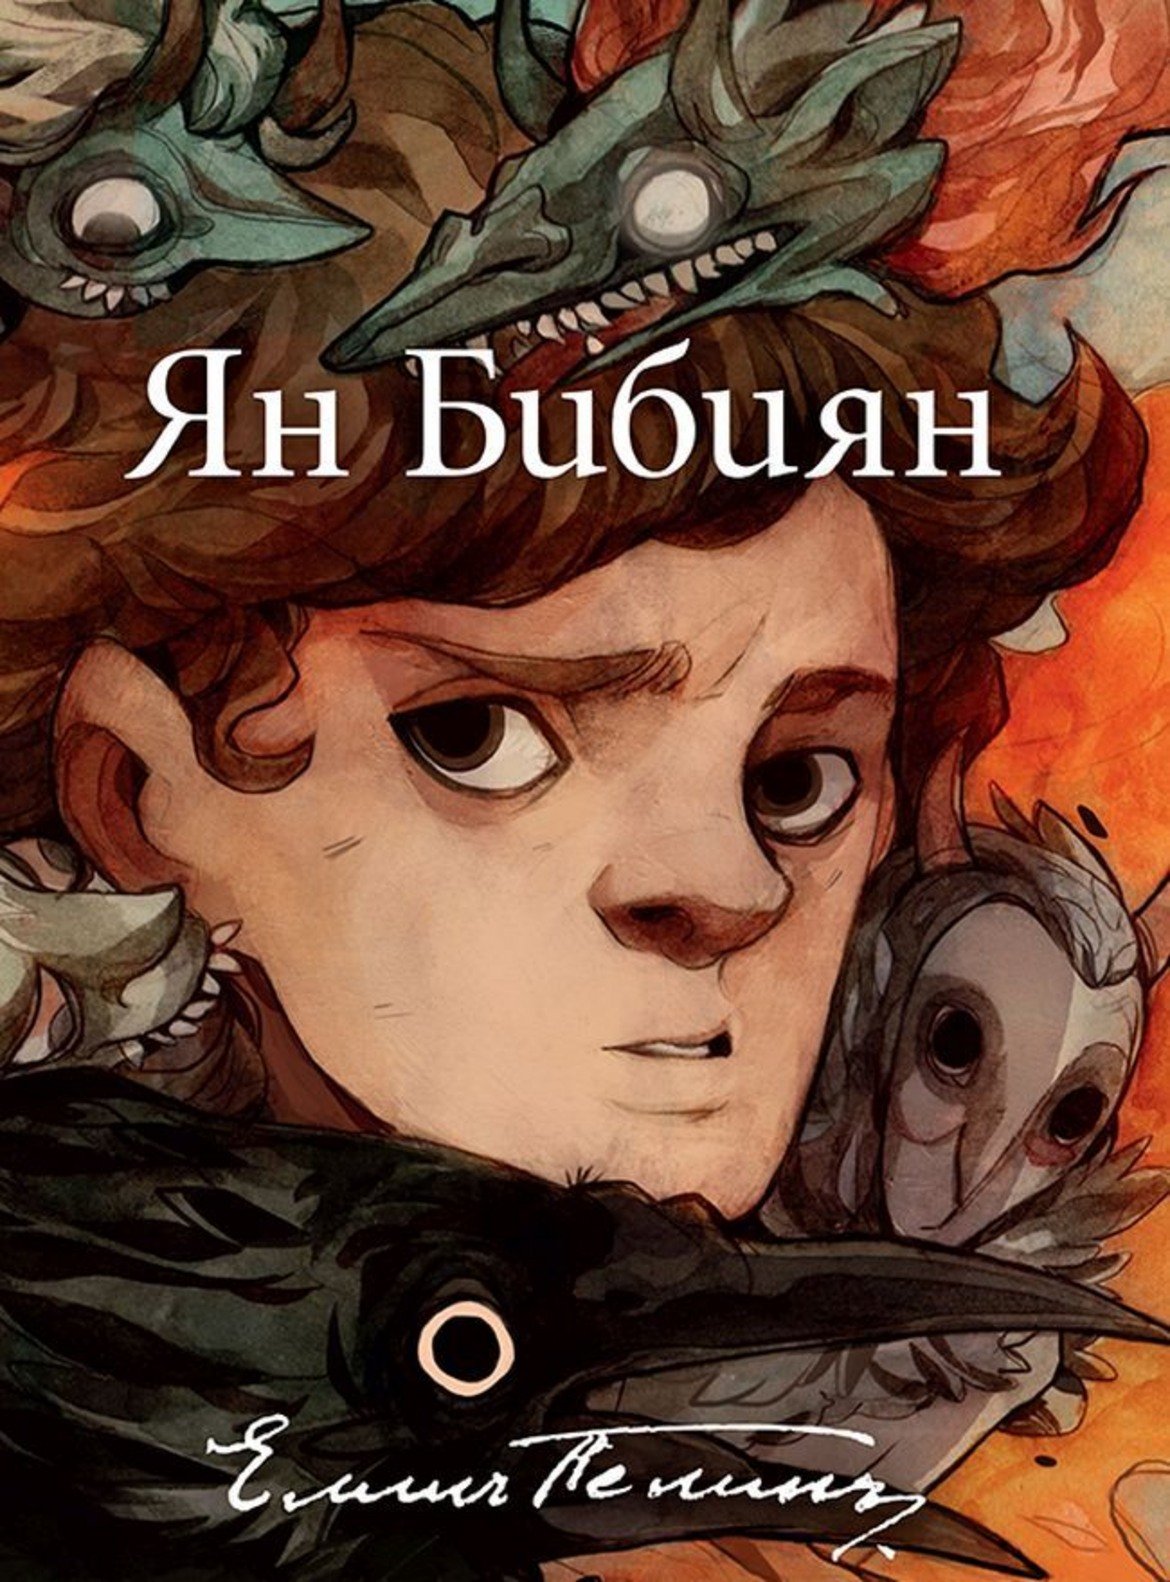  Елин Пелин - "Ян Бибиян" 

"Ян Бибиян" се смята за първият фантастичен роман за деца в България, но това далеч не е единствената причина да бъде четен и препрочитан. Книгата е наситена с фантастични приключения, чудати герои и още по-чудати случки. Заслужава си да я препрочетете и на една по-късна възраст, за да откриете, че в нея е заложена и голяма доза философия и размисли за доброто и злото. Още повече, че в края на миналата година романът на Елин Пелин се сдоби с юбилейно издание с изцяло нов облик и невероятни илюстрации.